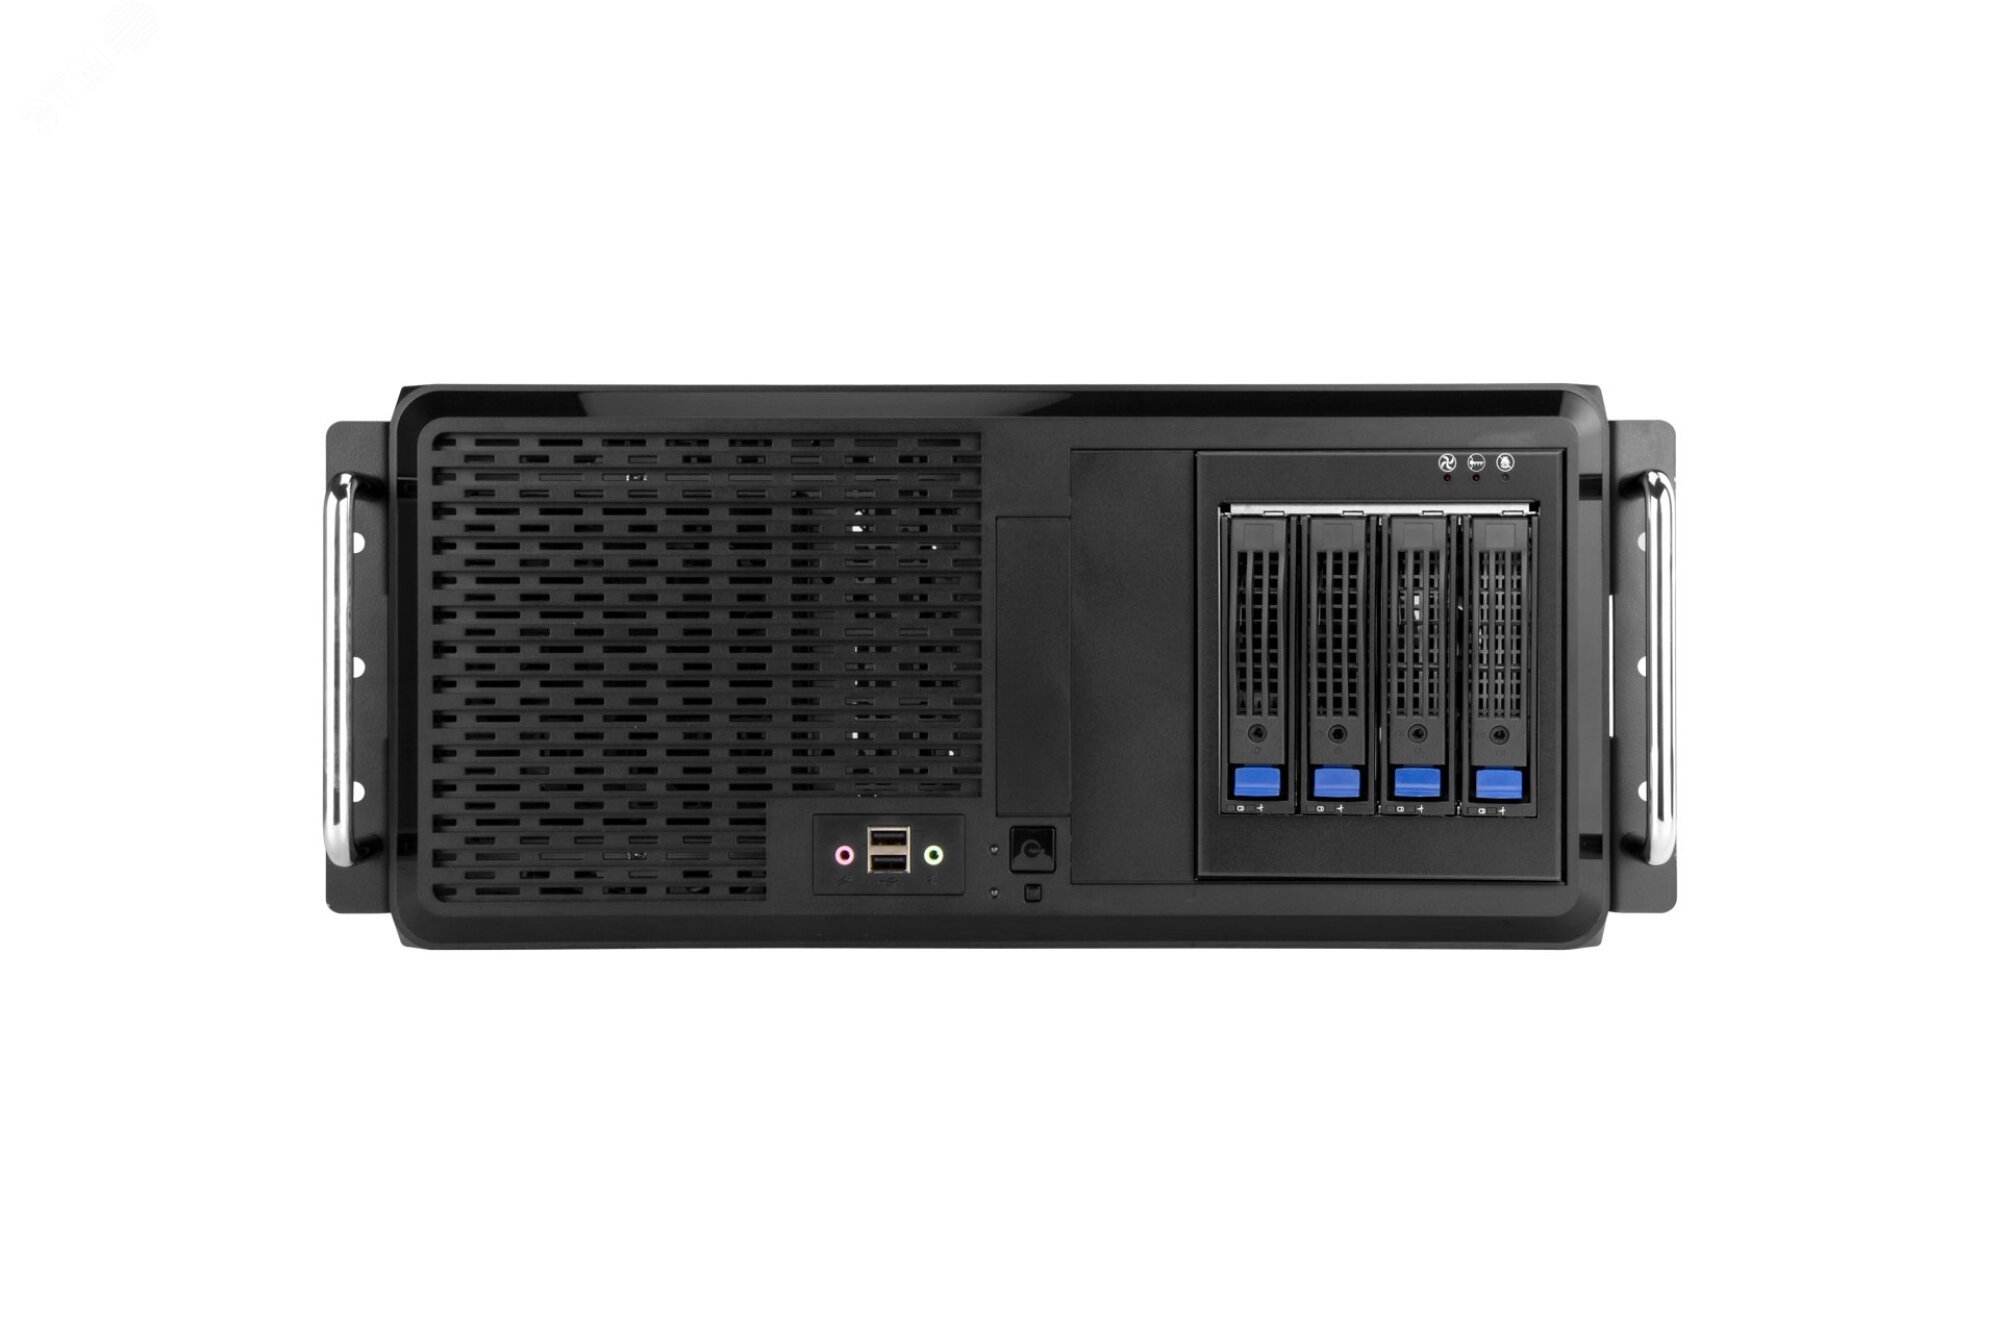 Рабочая станция G40 S90, до 5 SSD/HDD, ОЗУ до 64 ГБ DDR4, графическая ситема опционально PRO G40 S90 Aquarius - превью 4